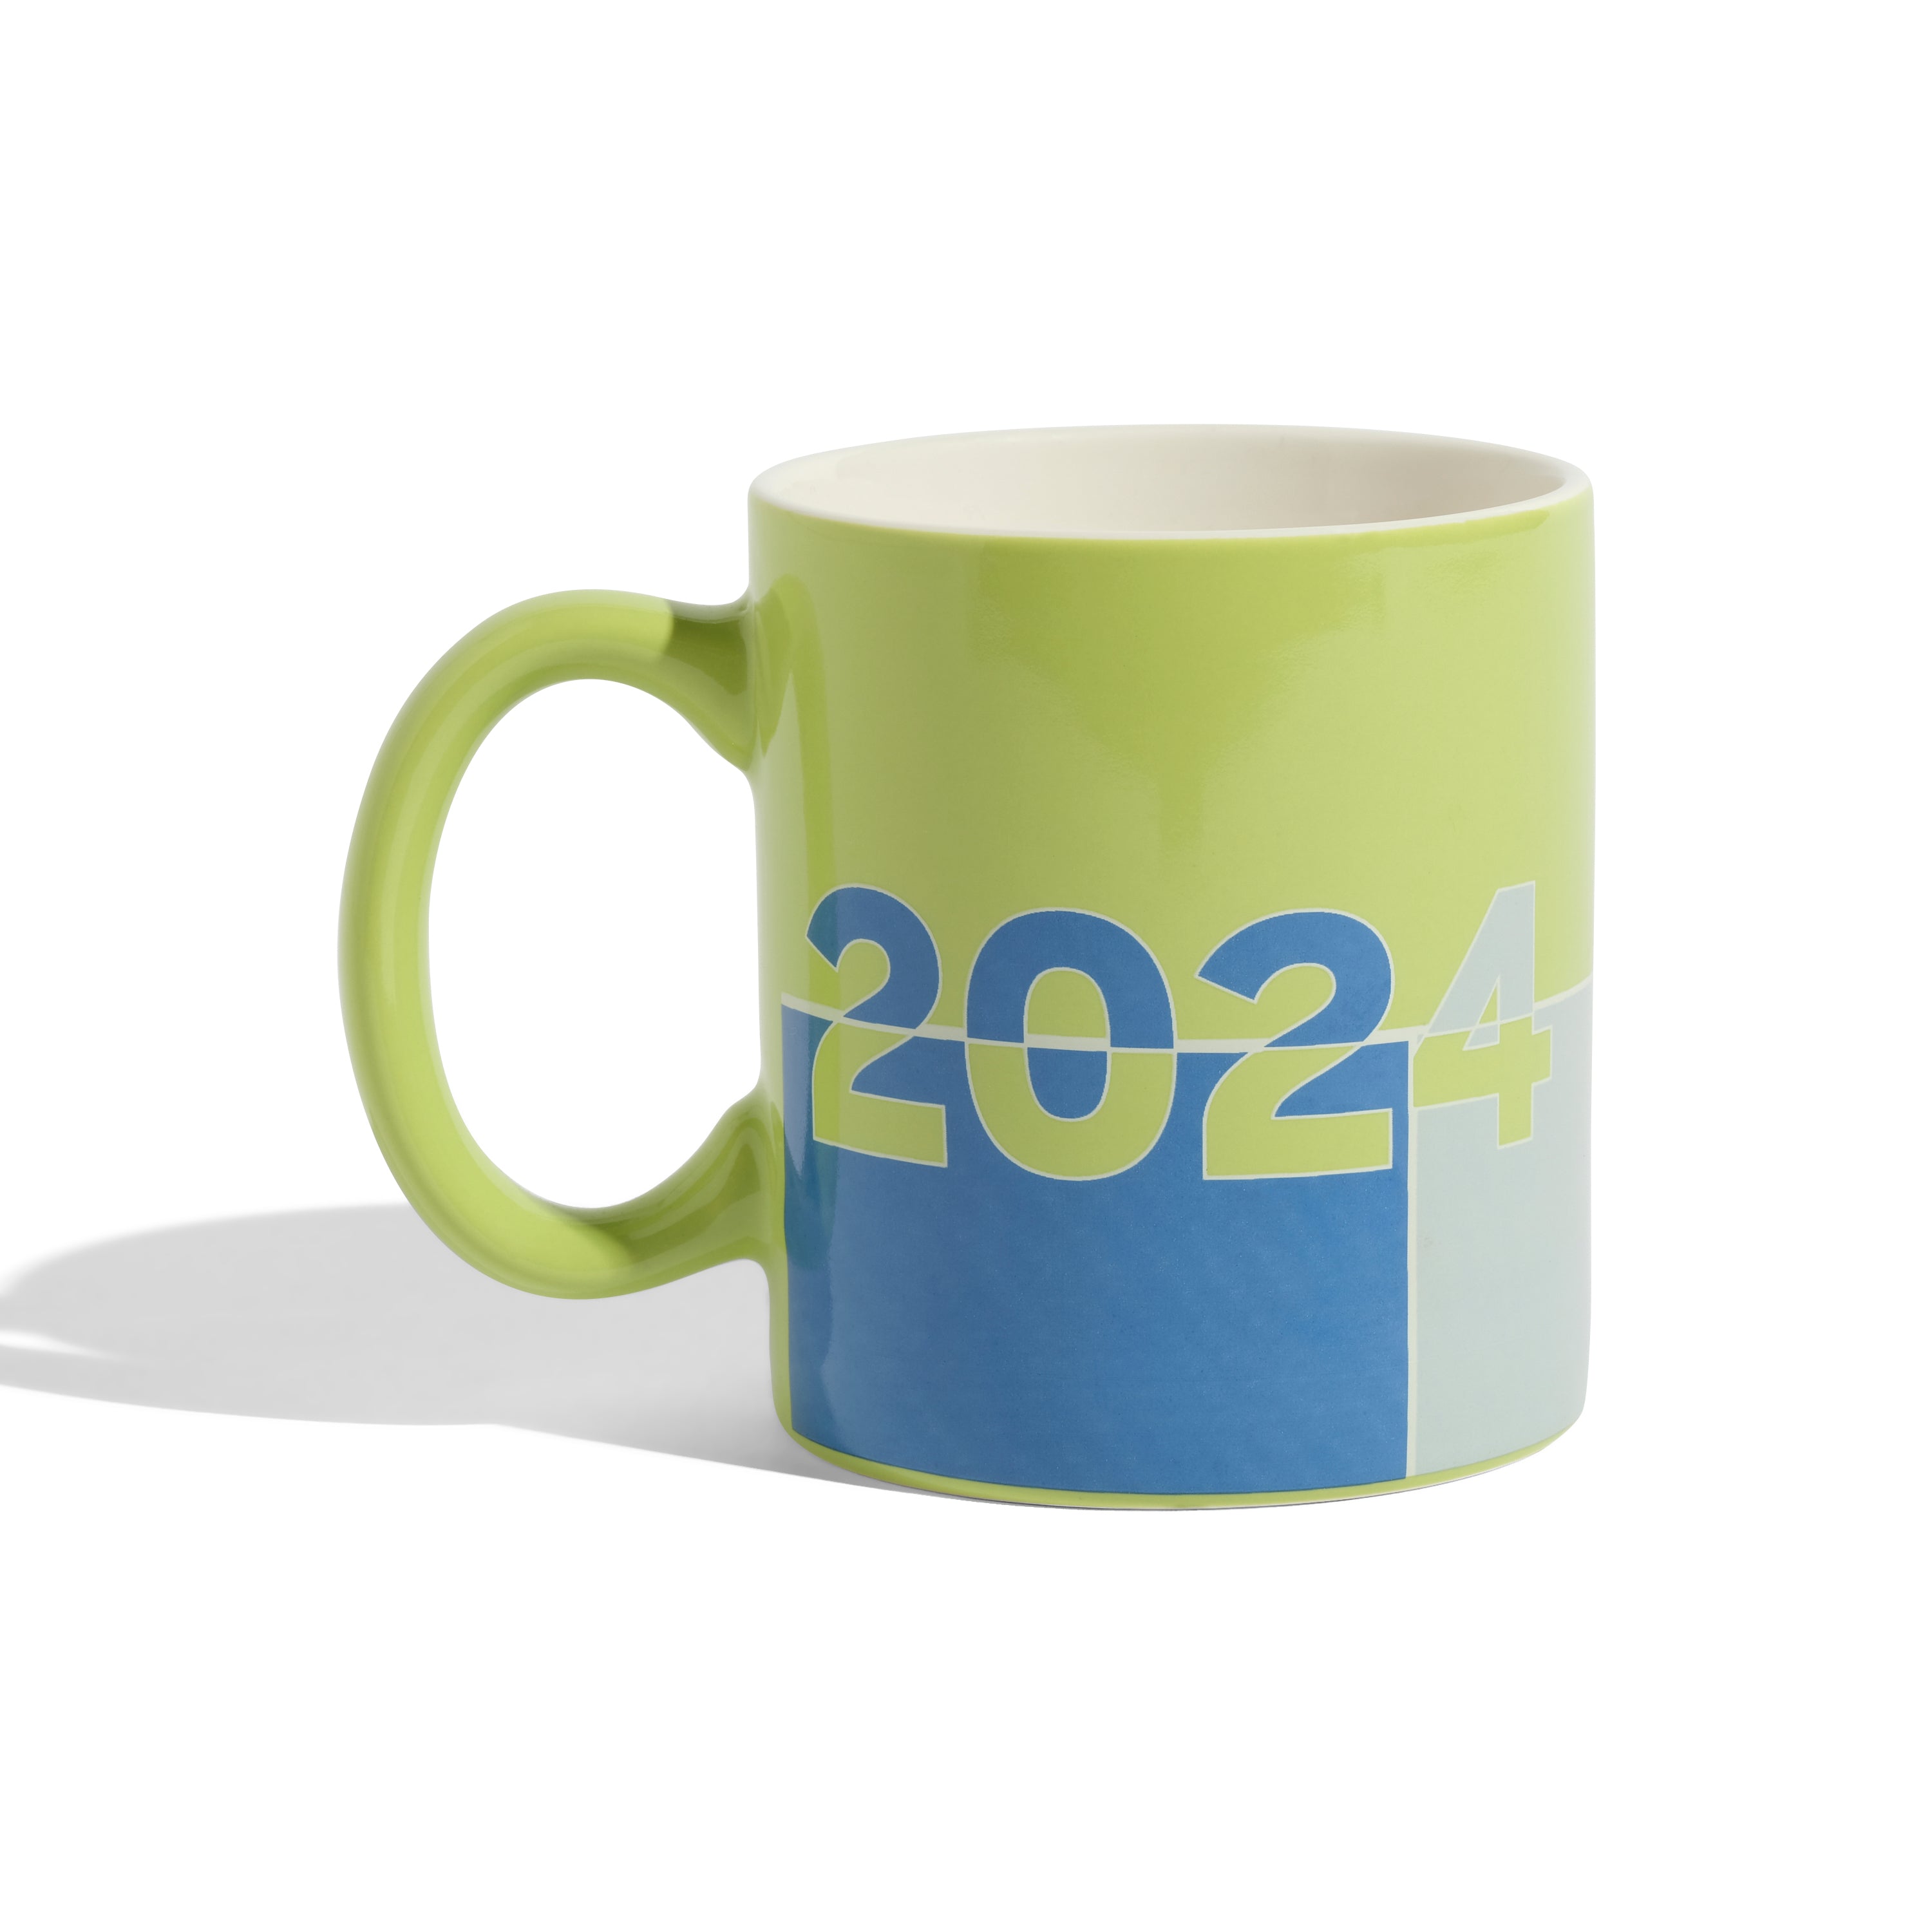 Mug Colourblock 2024